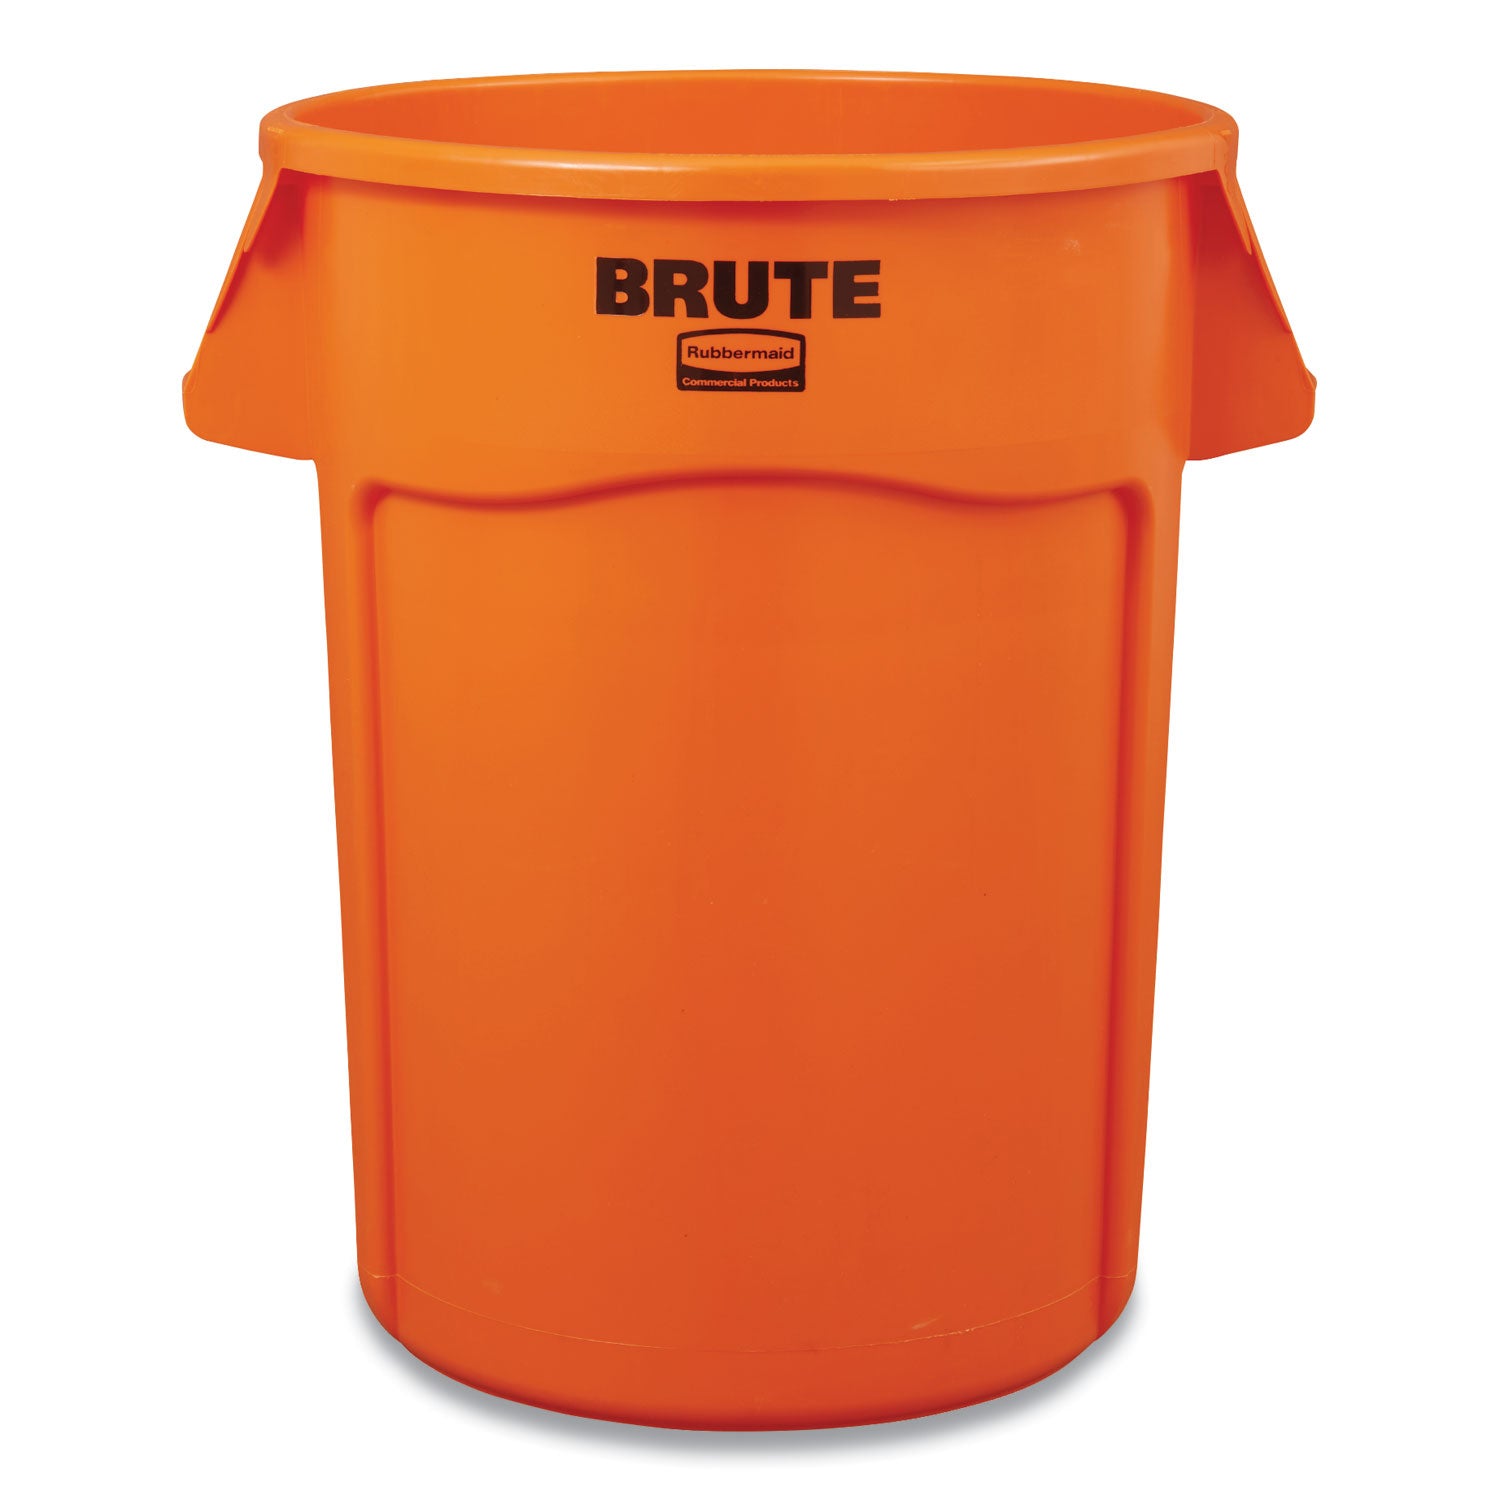 Brute Round Container, 44 gal, Plastic, Orange - 1